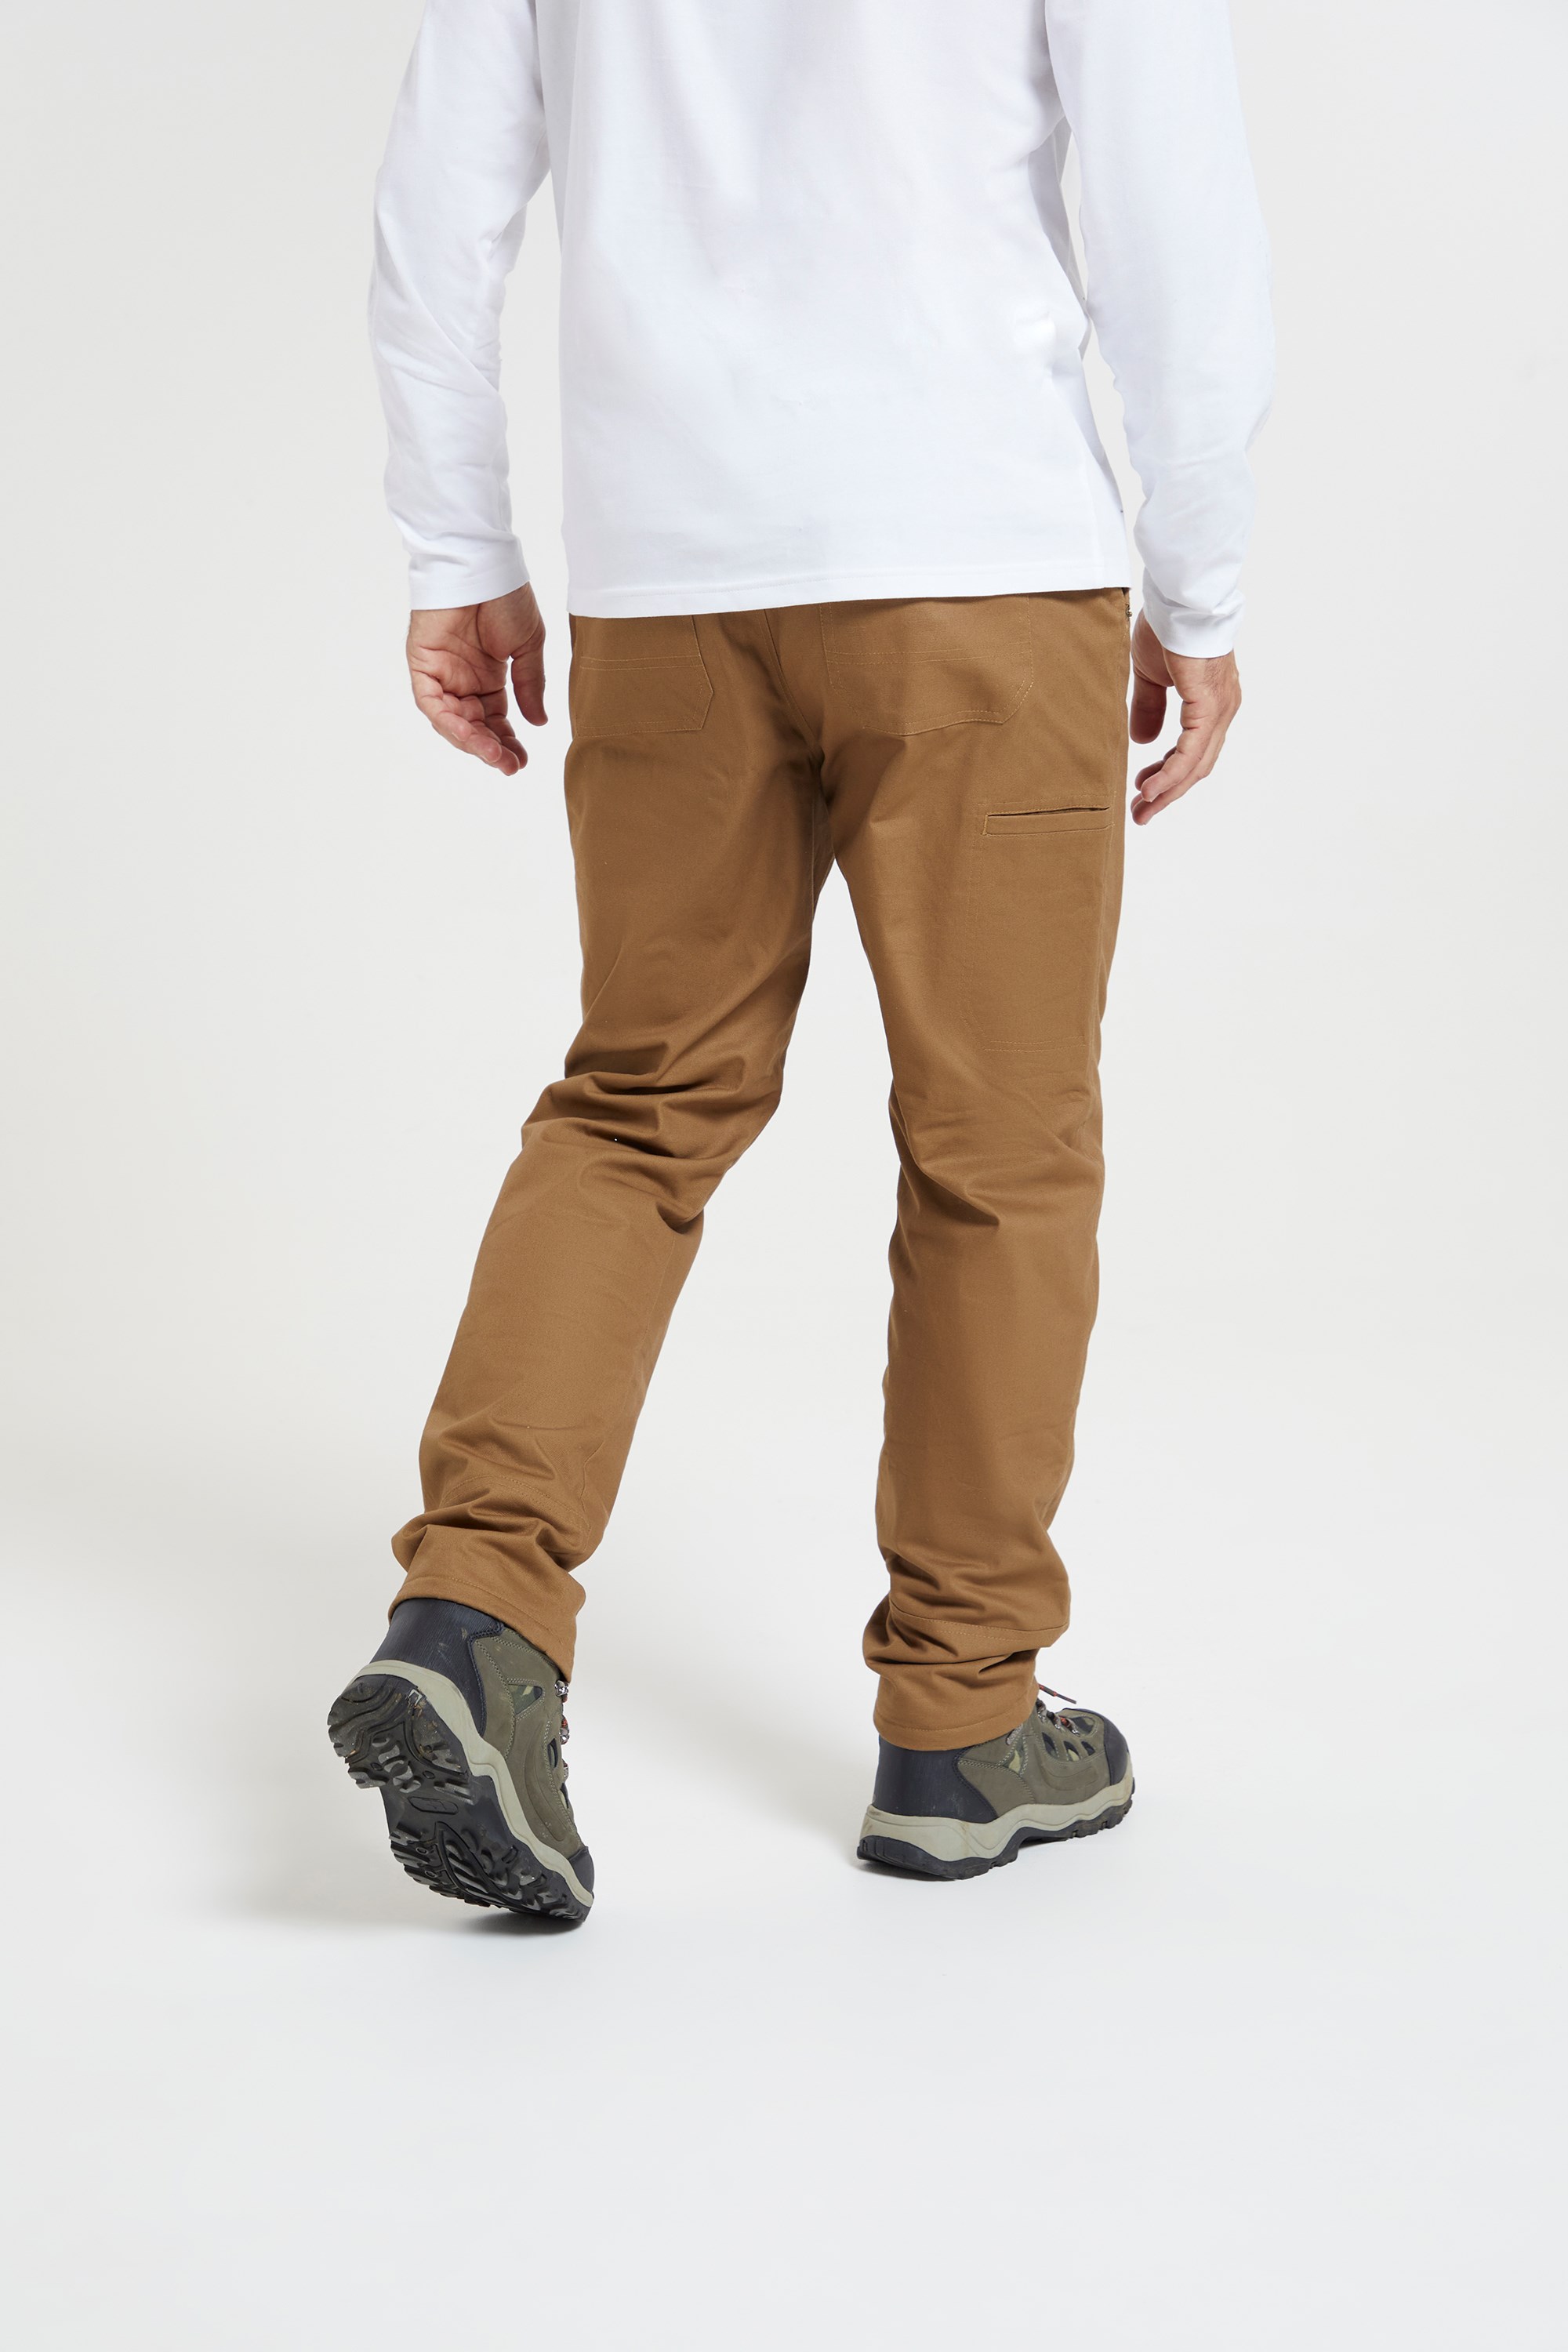 Fleece-Lined Textured Pants – Two Moody